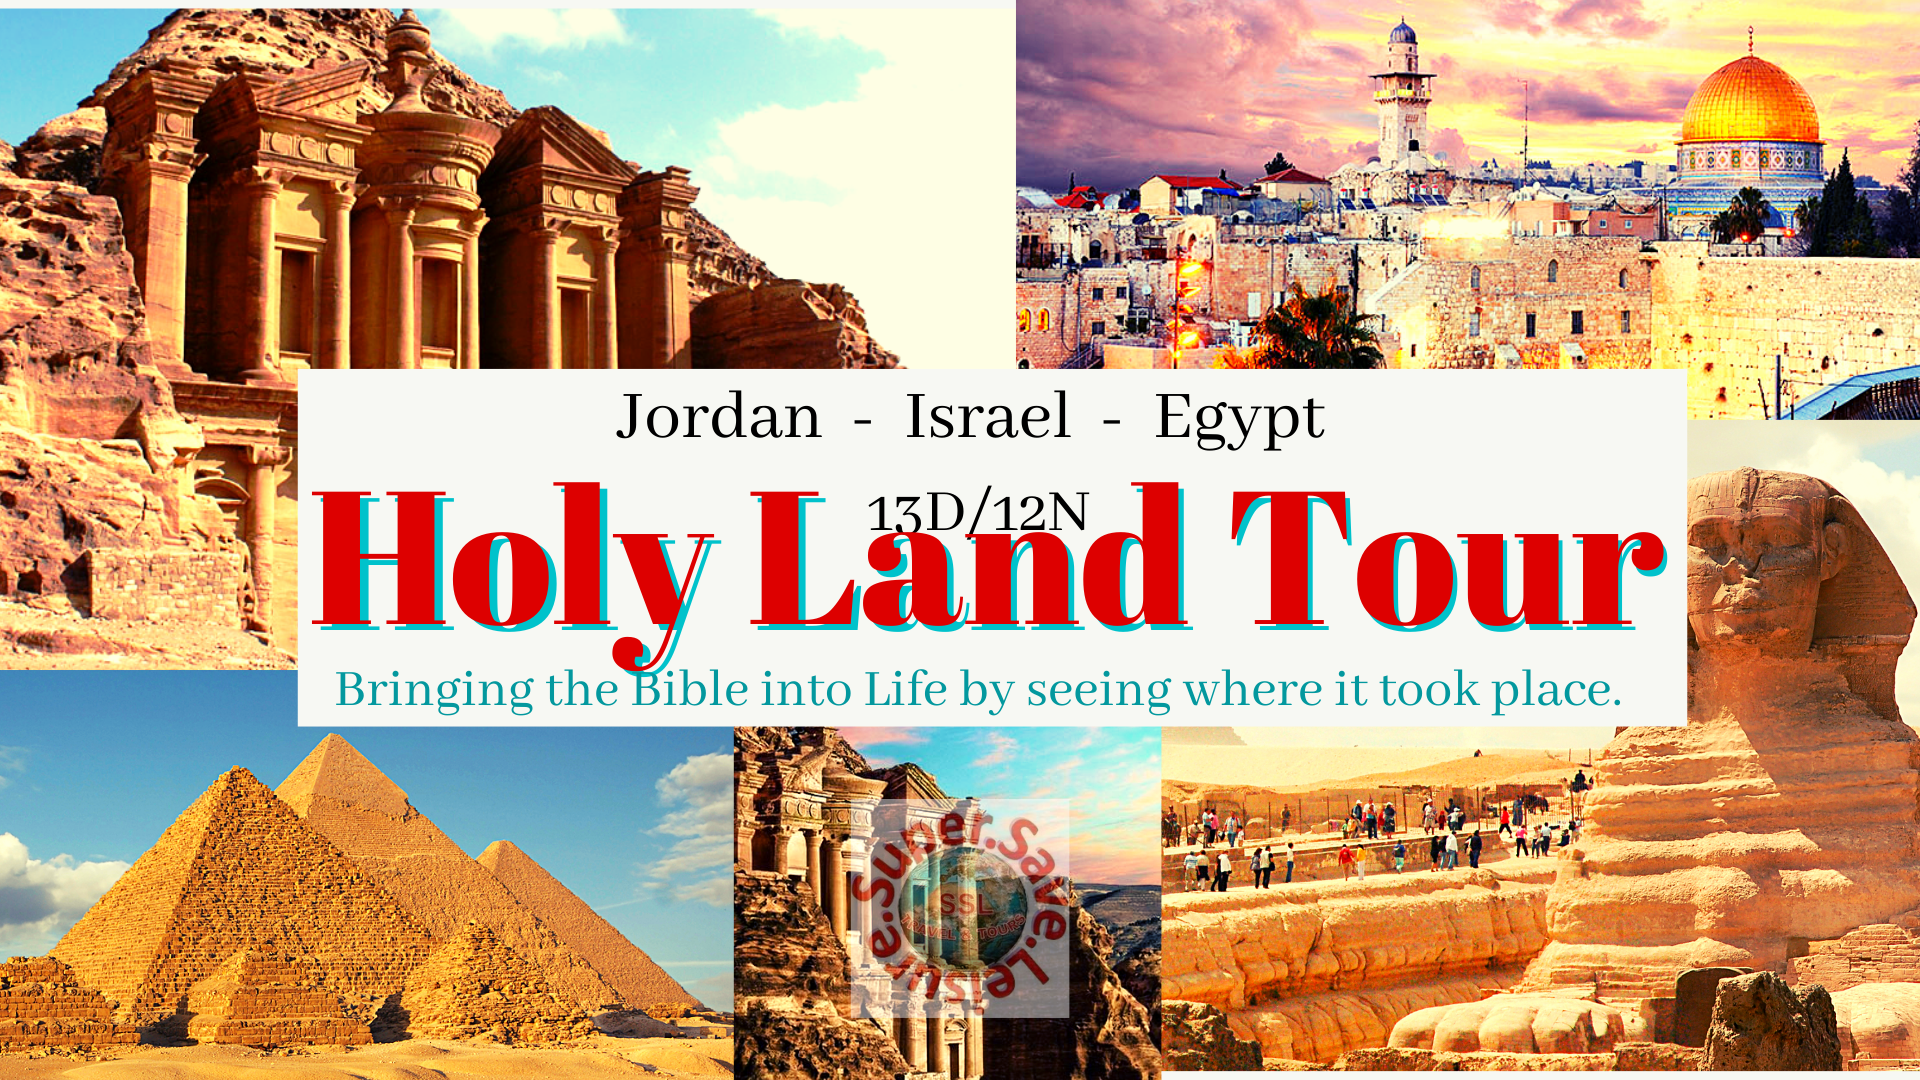 HOLY LAND TOUR - JORDAN-ISRAEL -EGYPT 13D/12N SEP 5-16,2022